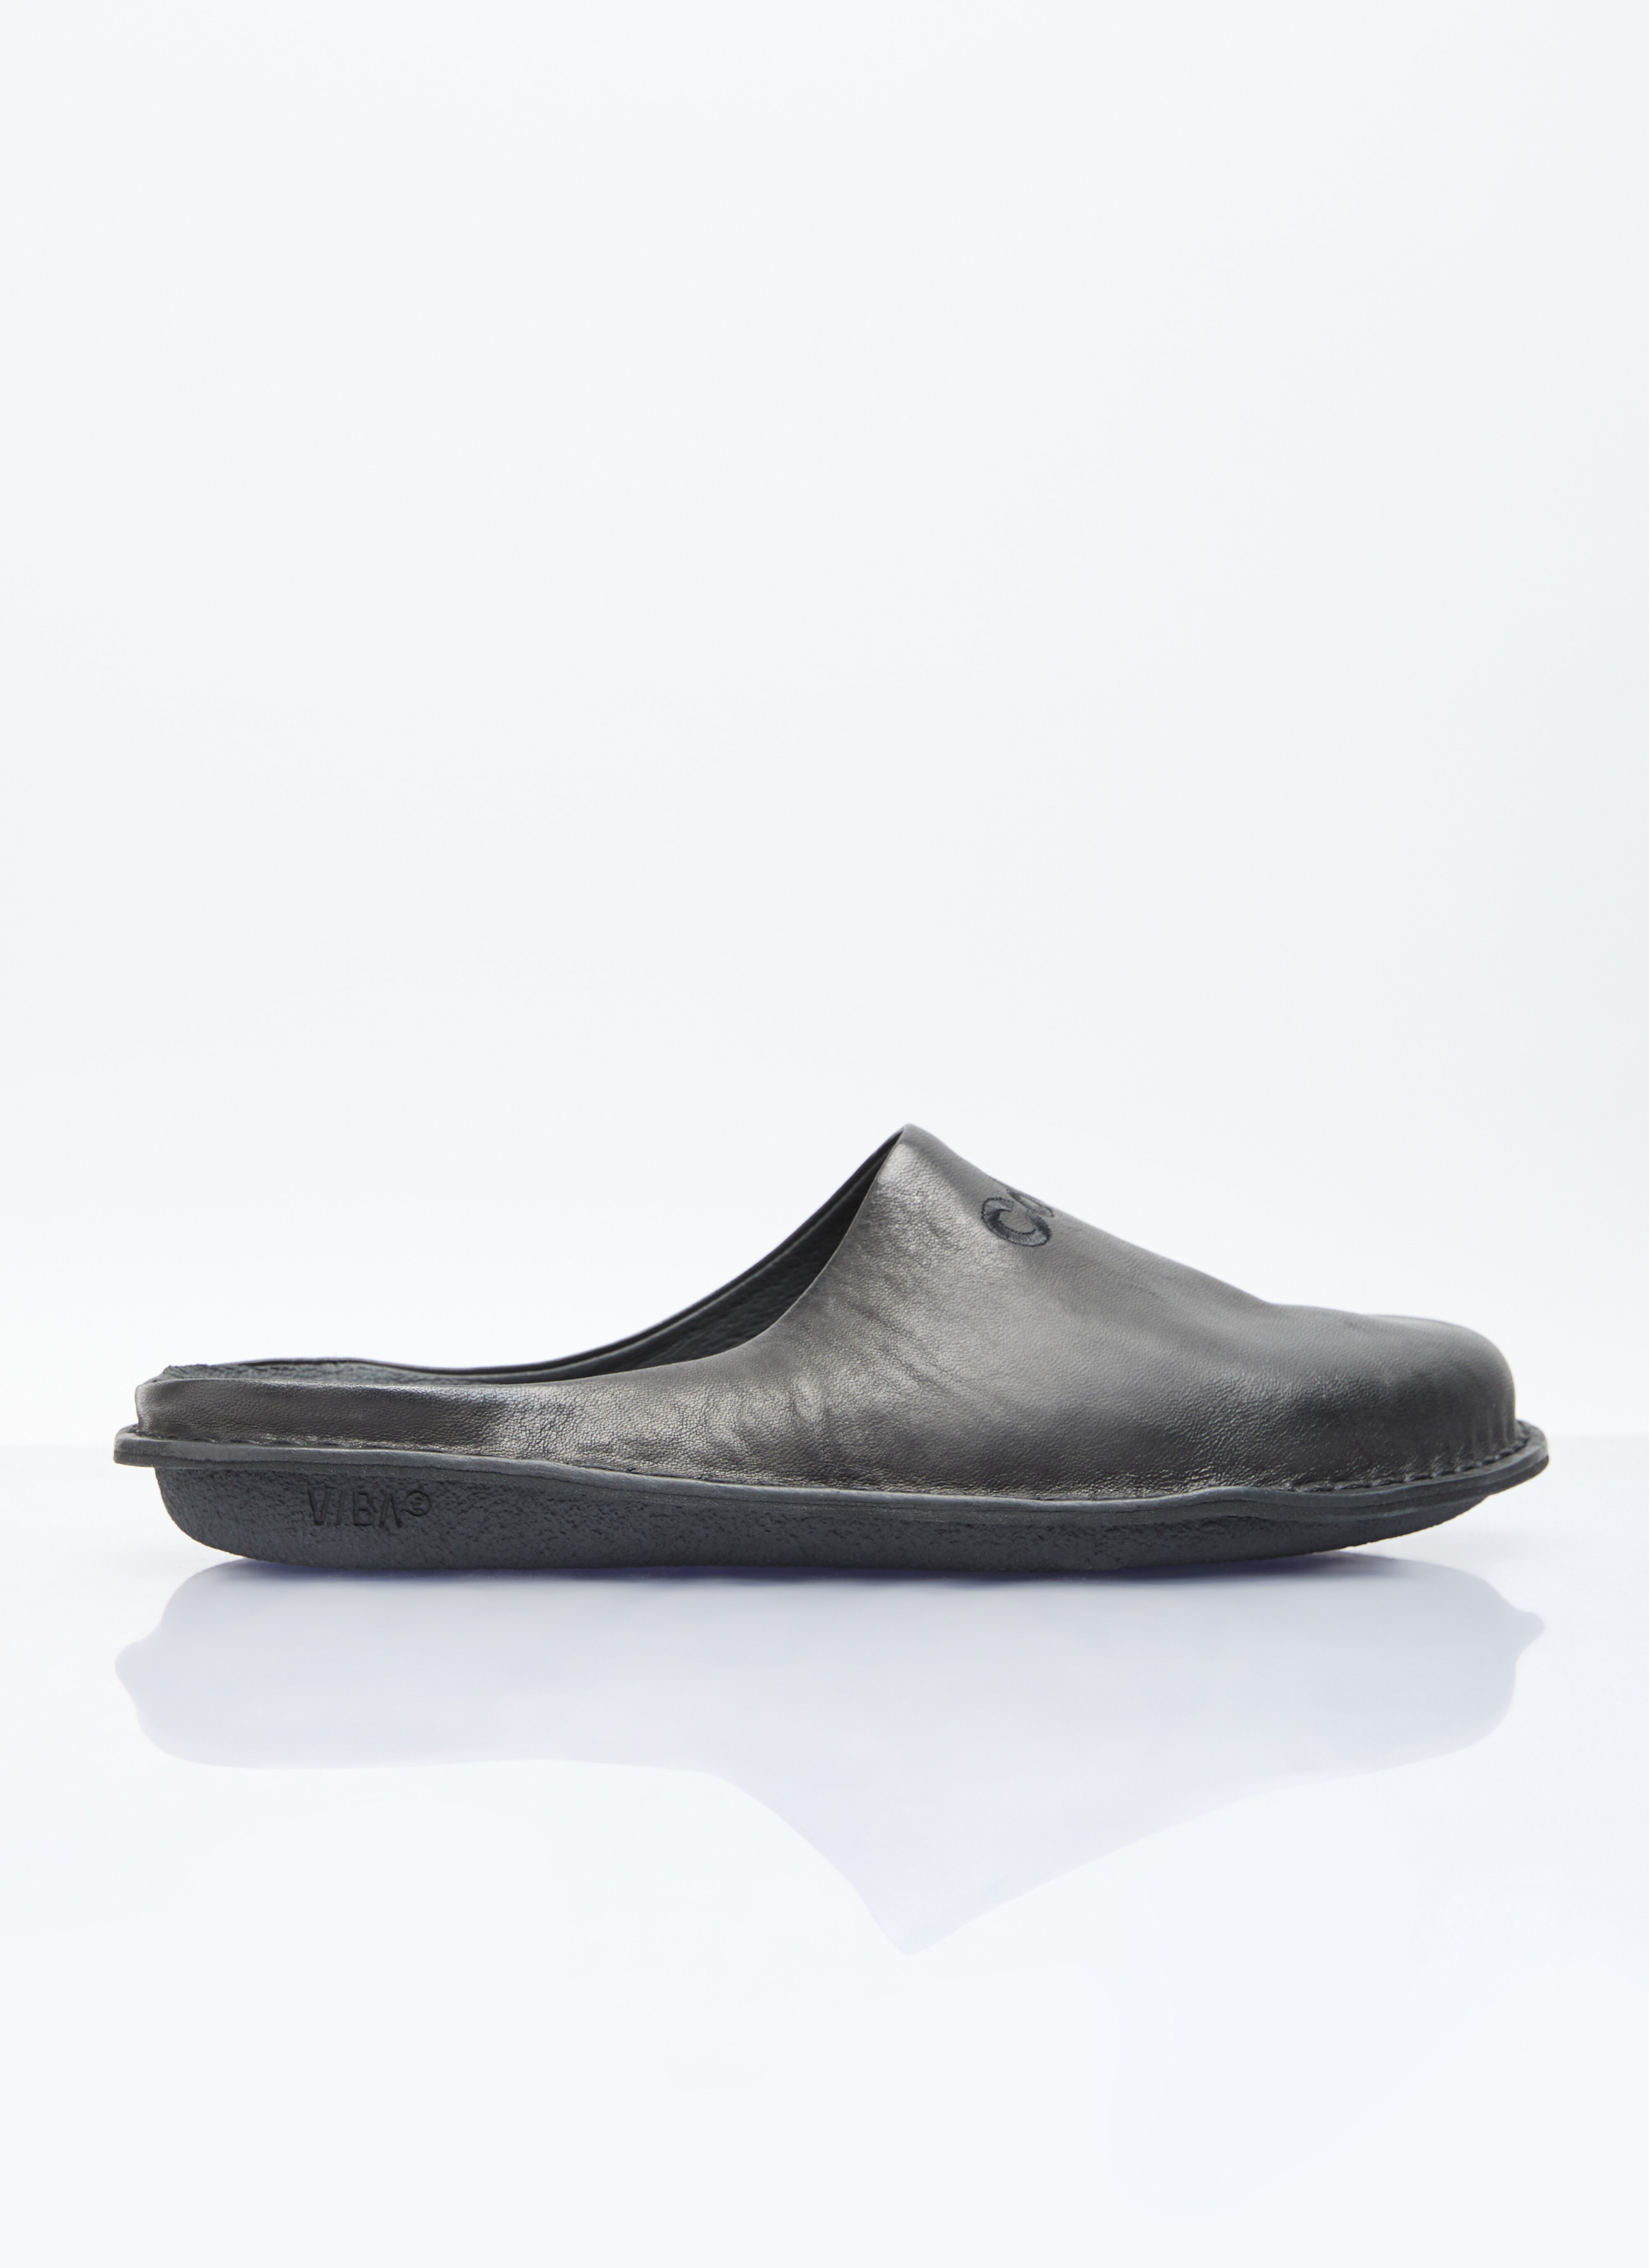 Comme des Garçons Homme Leather Slip-On Shoes Black cdh0154008